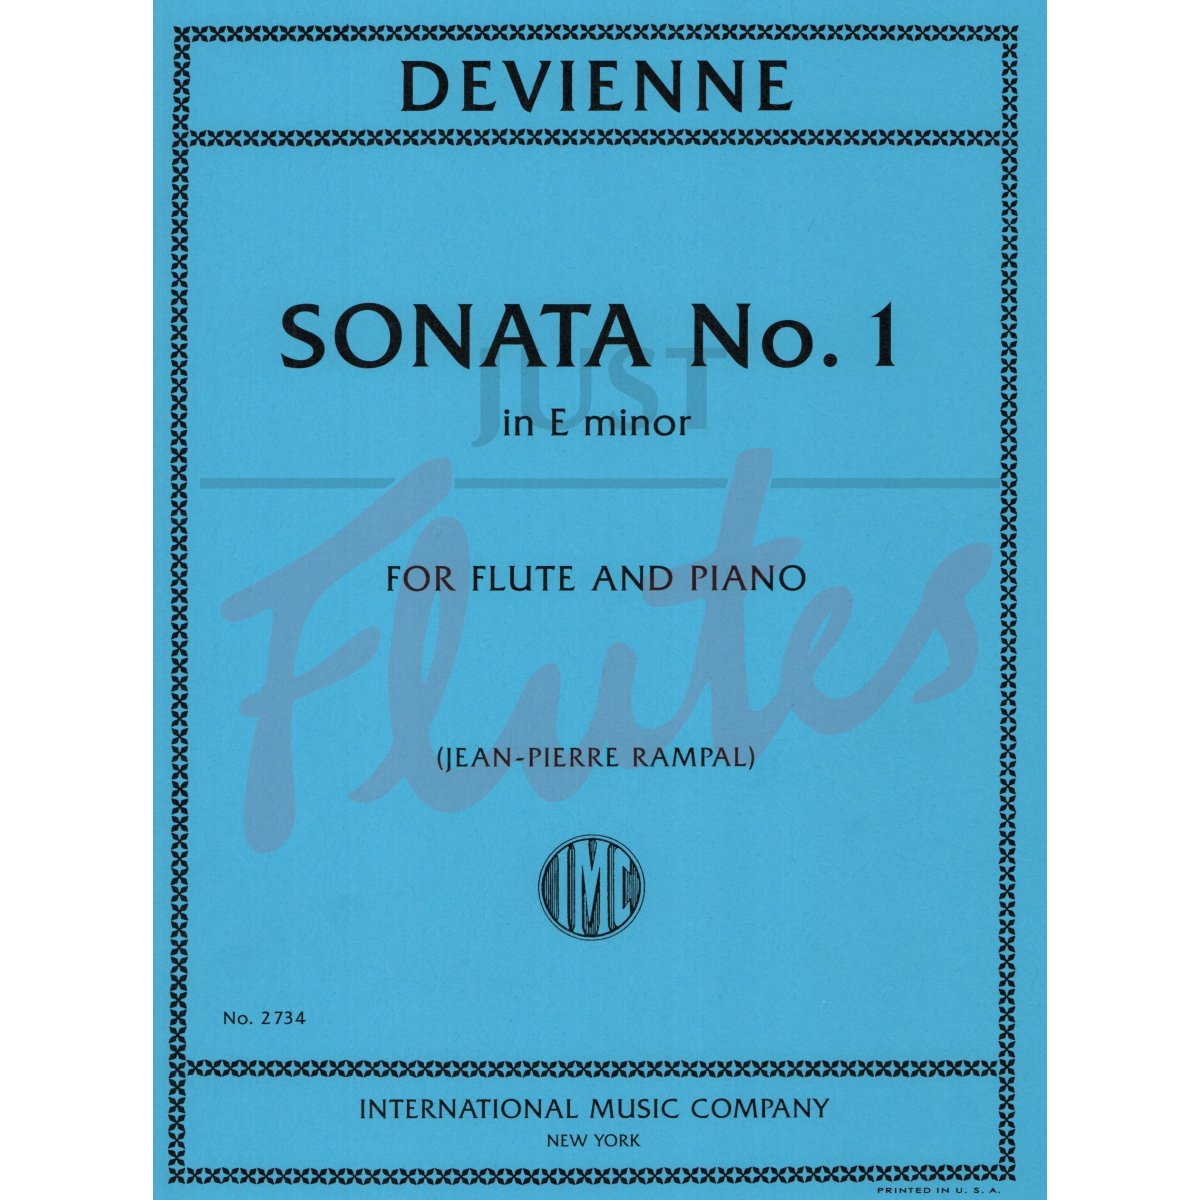 Sonata No. 1 in E minor for Flute and Piano